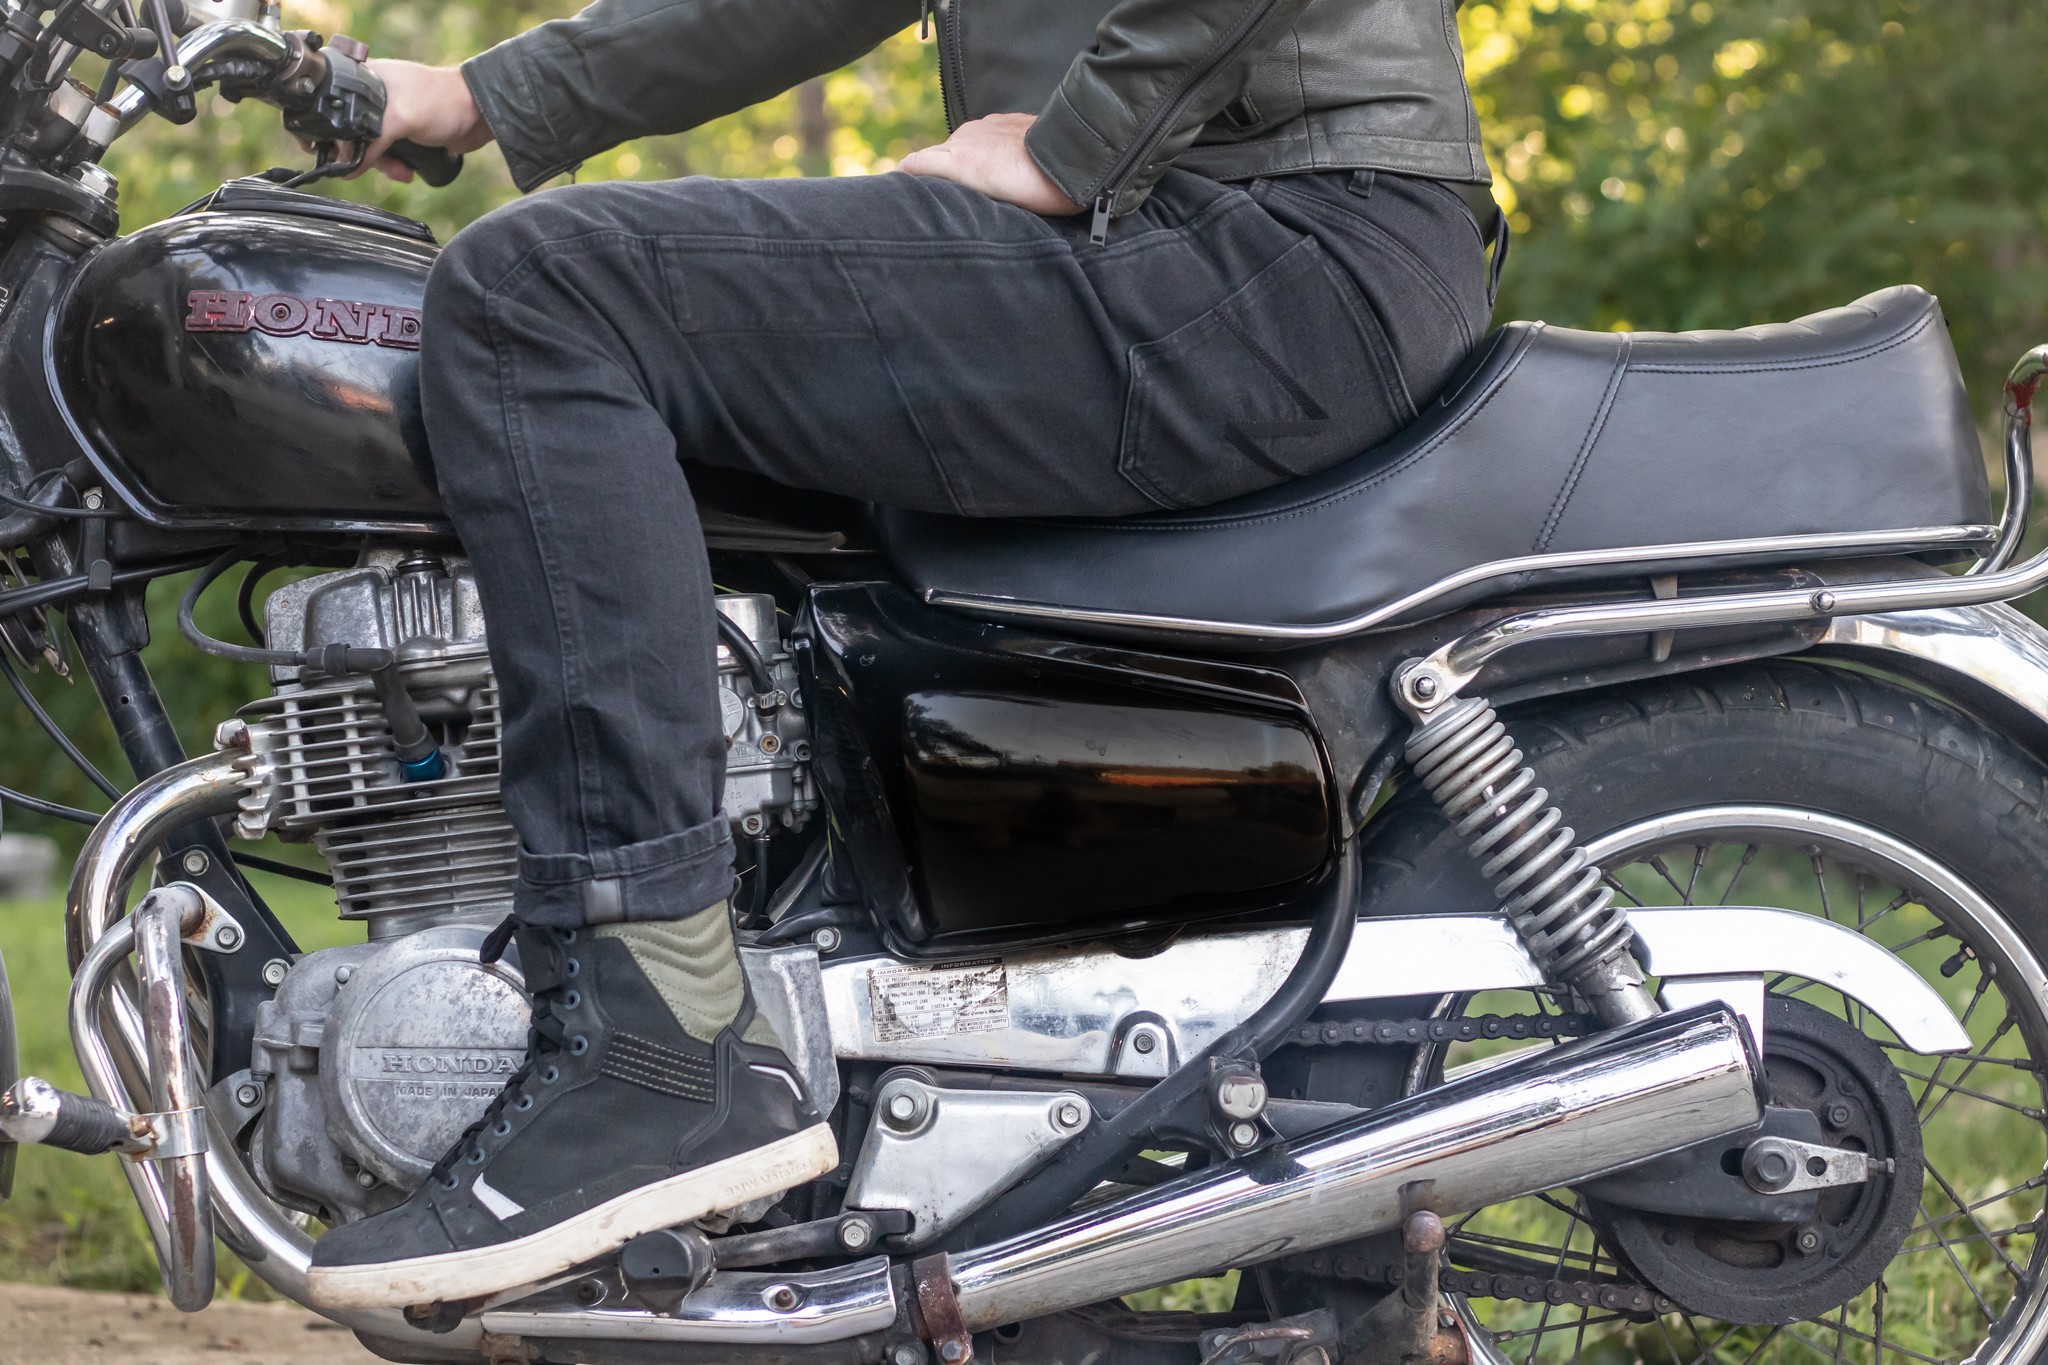 Pando Moto Boss Dyn 01 Motorcycle Jeans - Cycle Gear